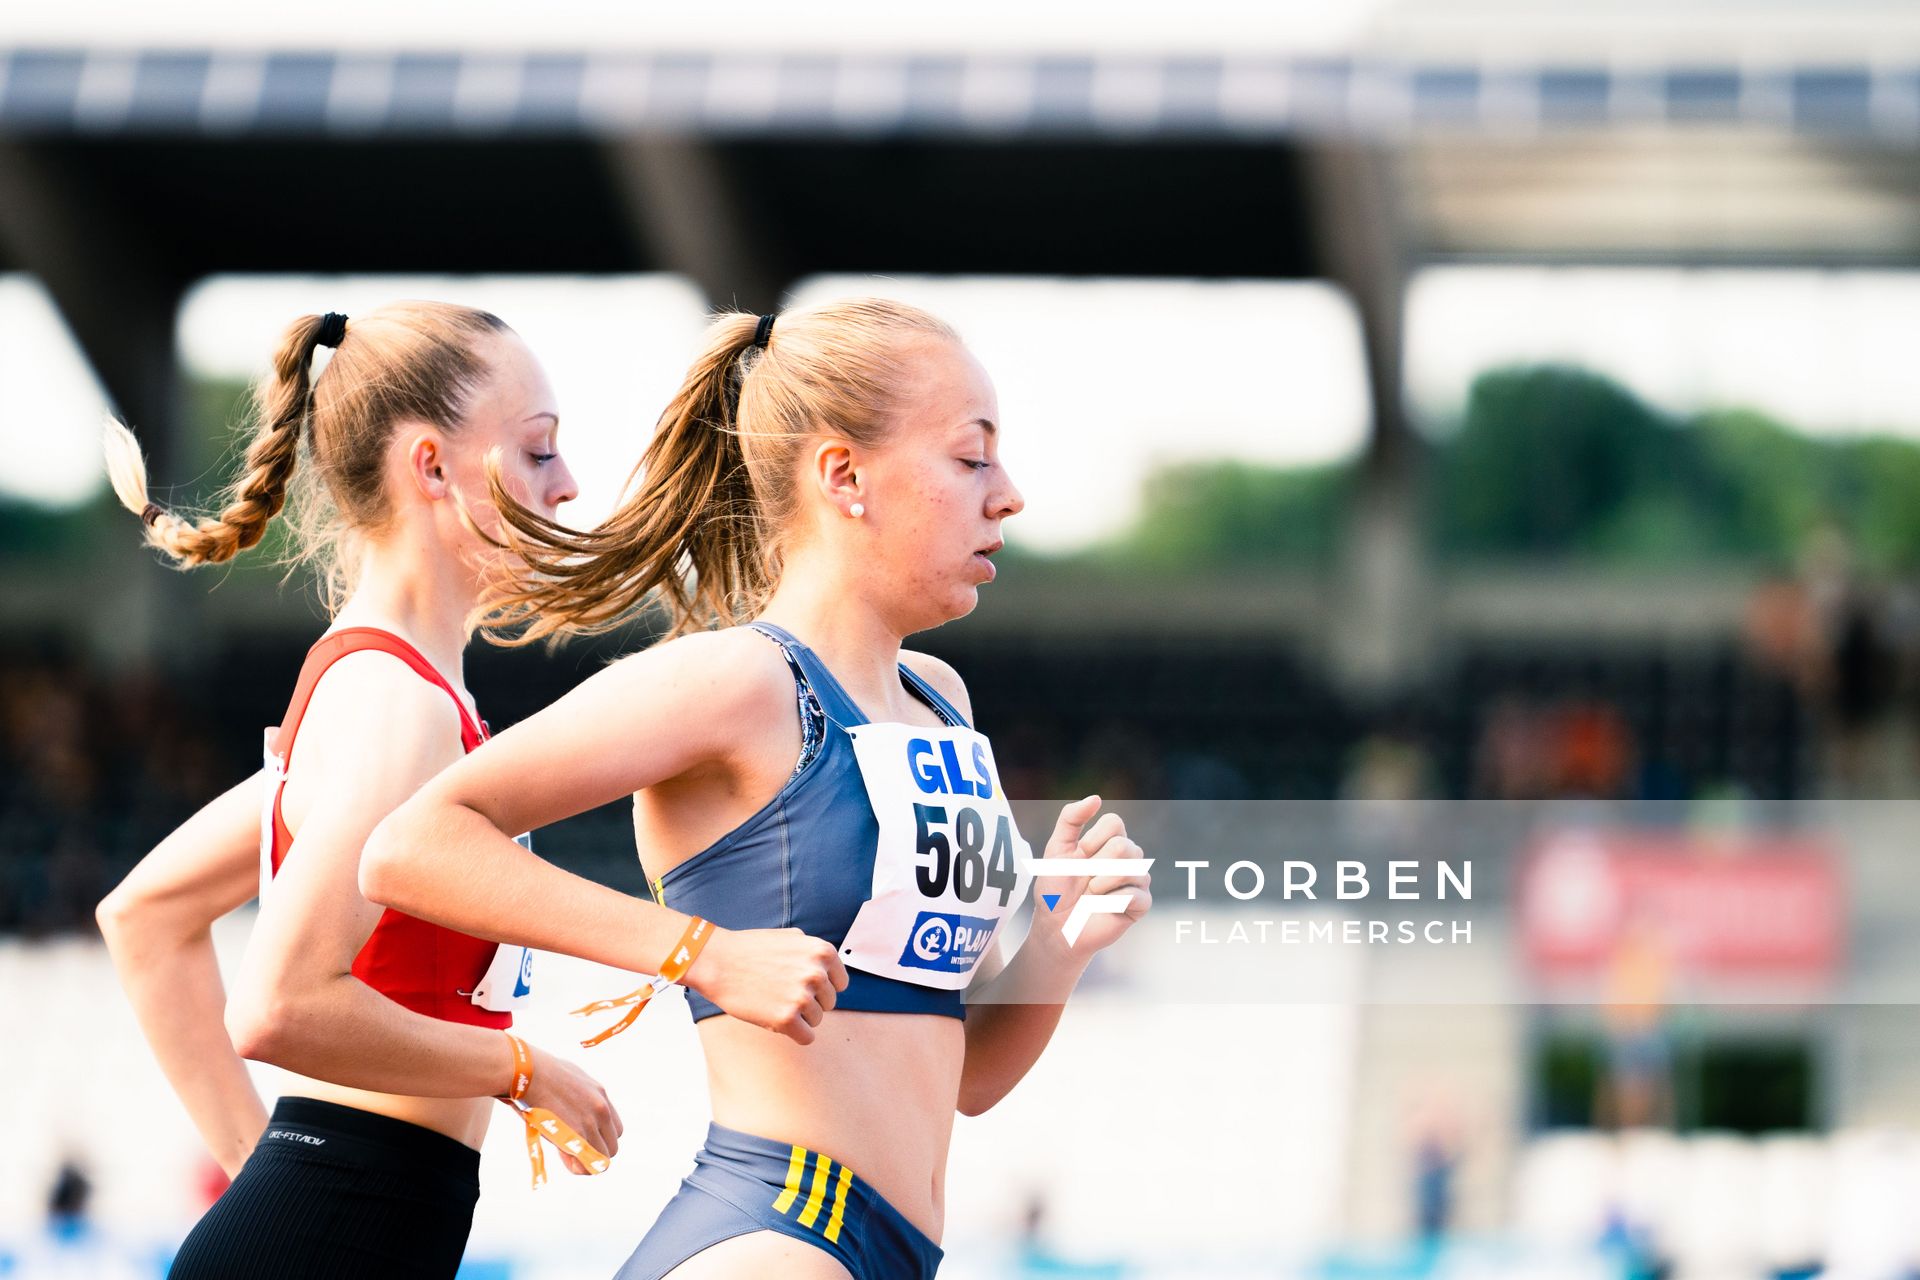 Carolin Hinrichs (VfL Loeningen) am 15.07.2022 waehrend den deutschen Leichtathletik-Jugendmeisterschaften 2022 in Ulm